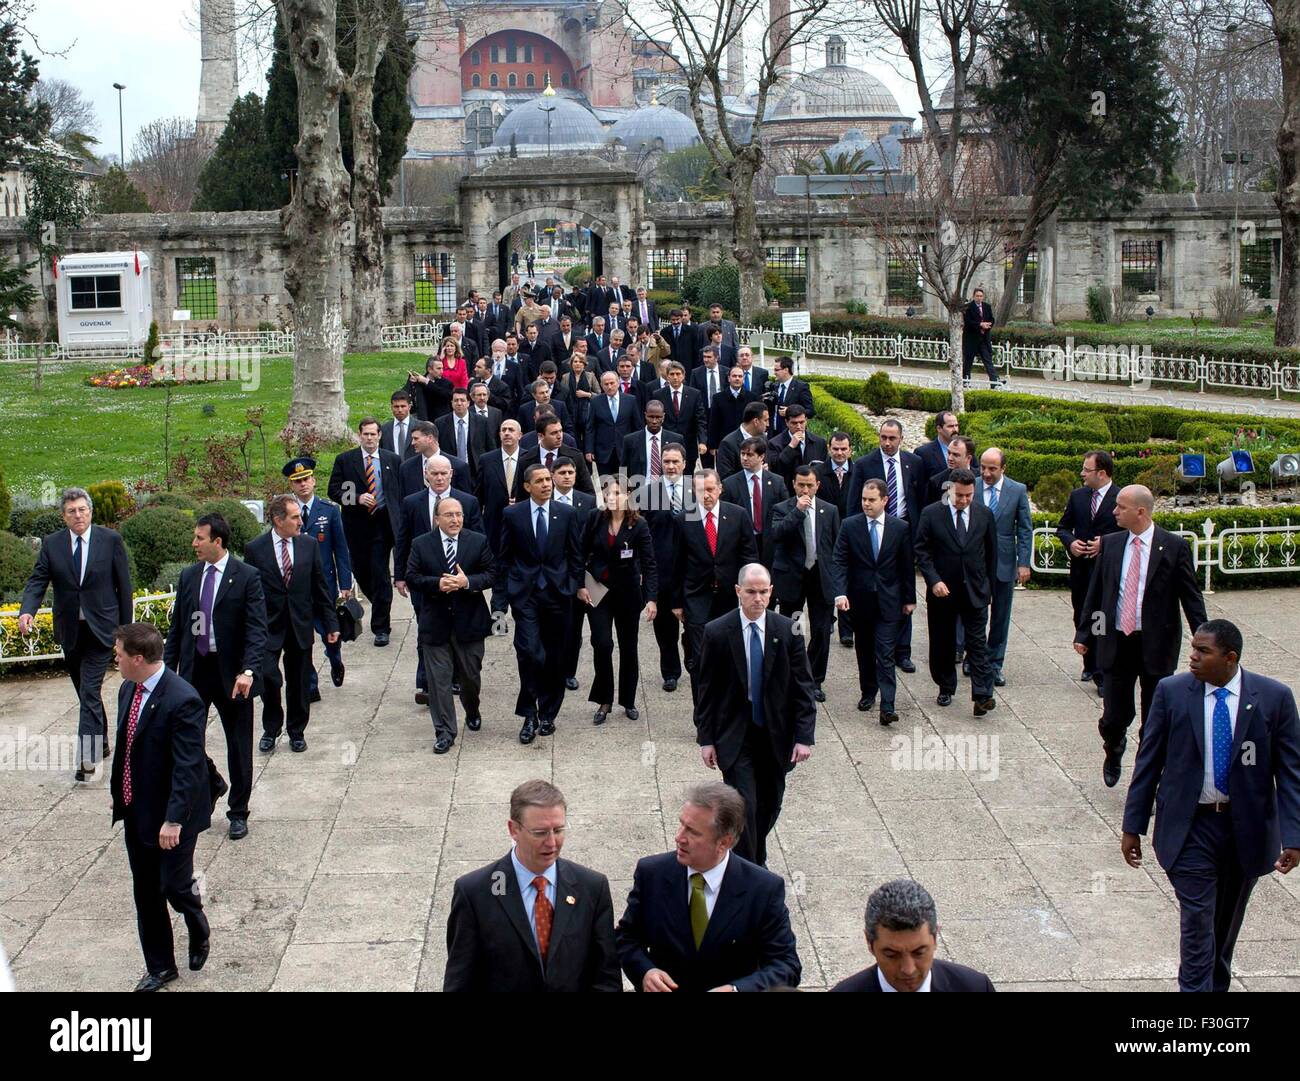 Le président des États-Unis, Barack Obama marche avec le Premier ministre turc Recep Tayyip Erdogan de Hagia Sofia de la Mosquée Bleue le 7 avril 2009 à Istanbul, Turquie. Banque D'Images